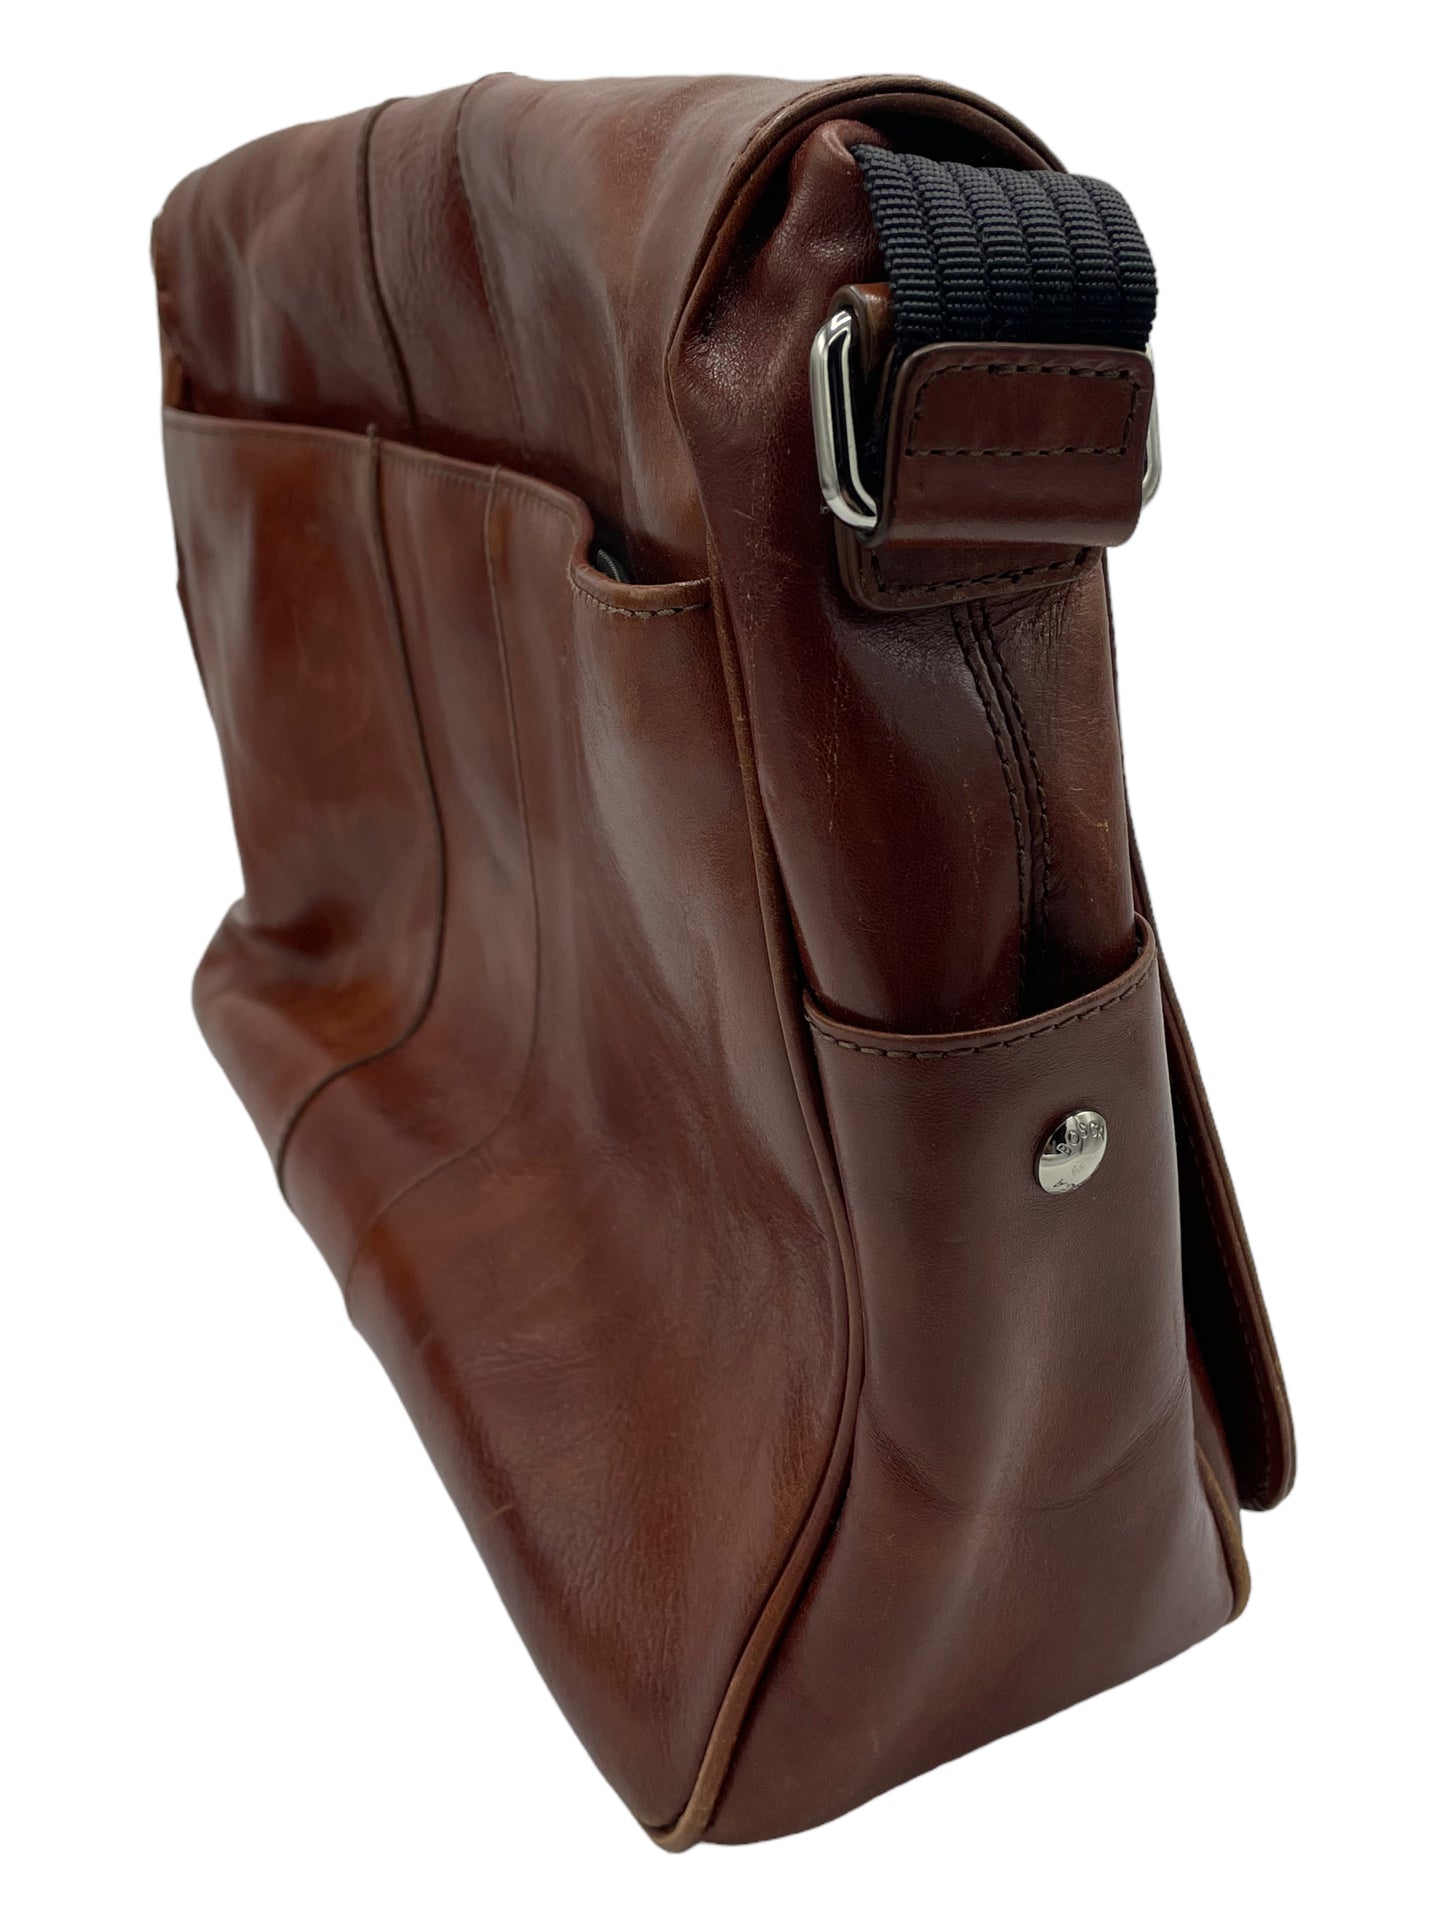 Bosca Dark Brown Old Leather Messenger Bag